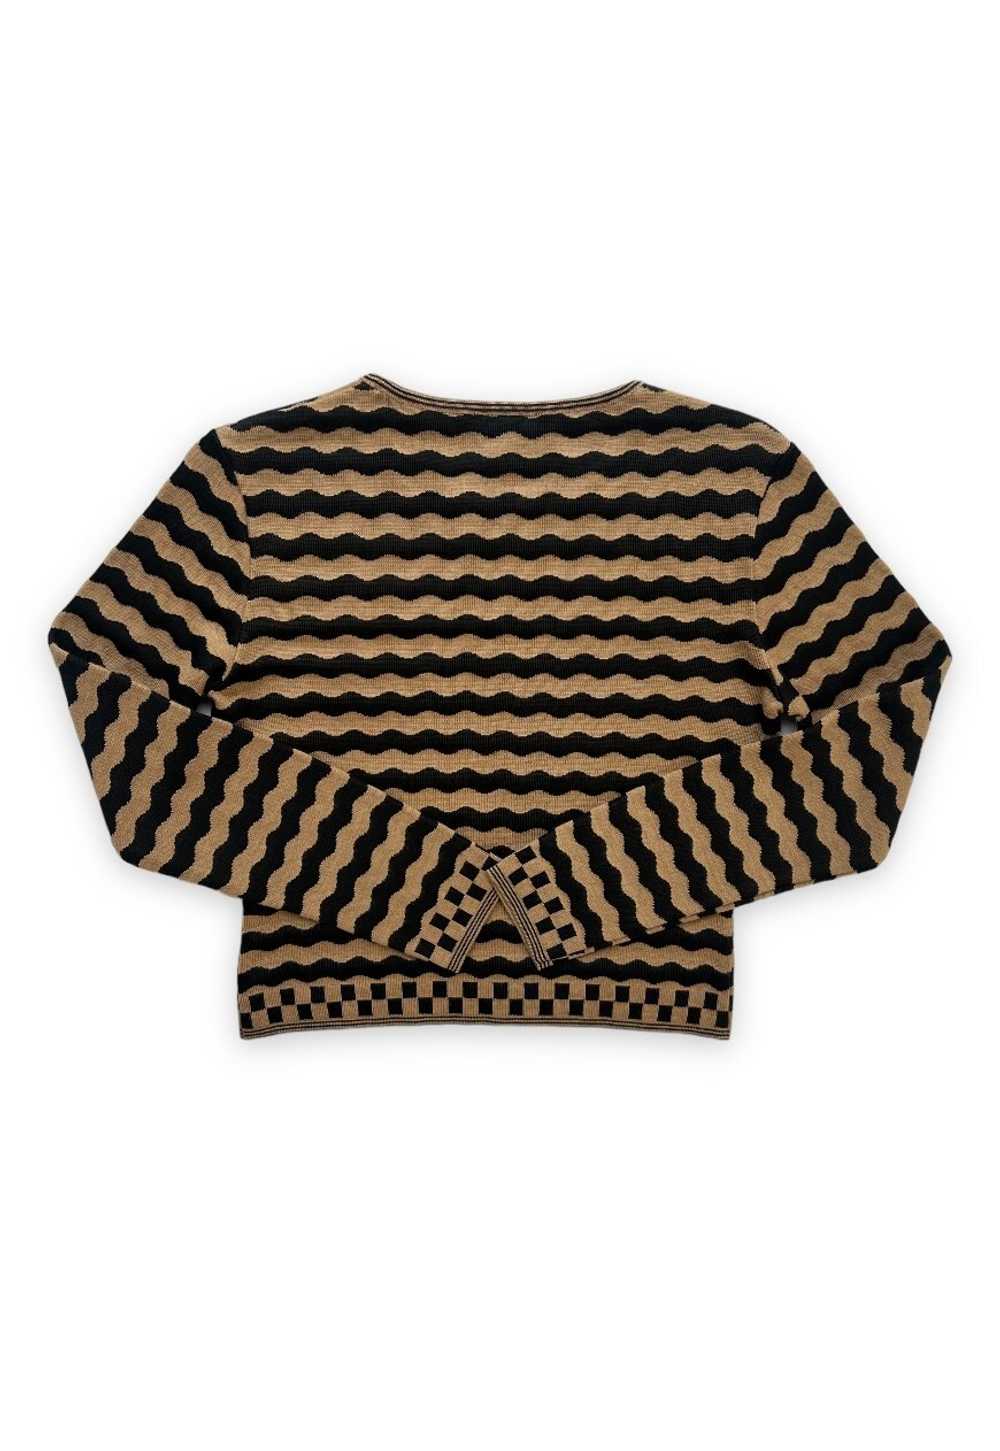 Vintage Fendi top knit crop jumper FF stripe beig… - image 3